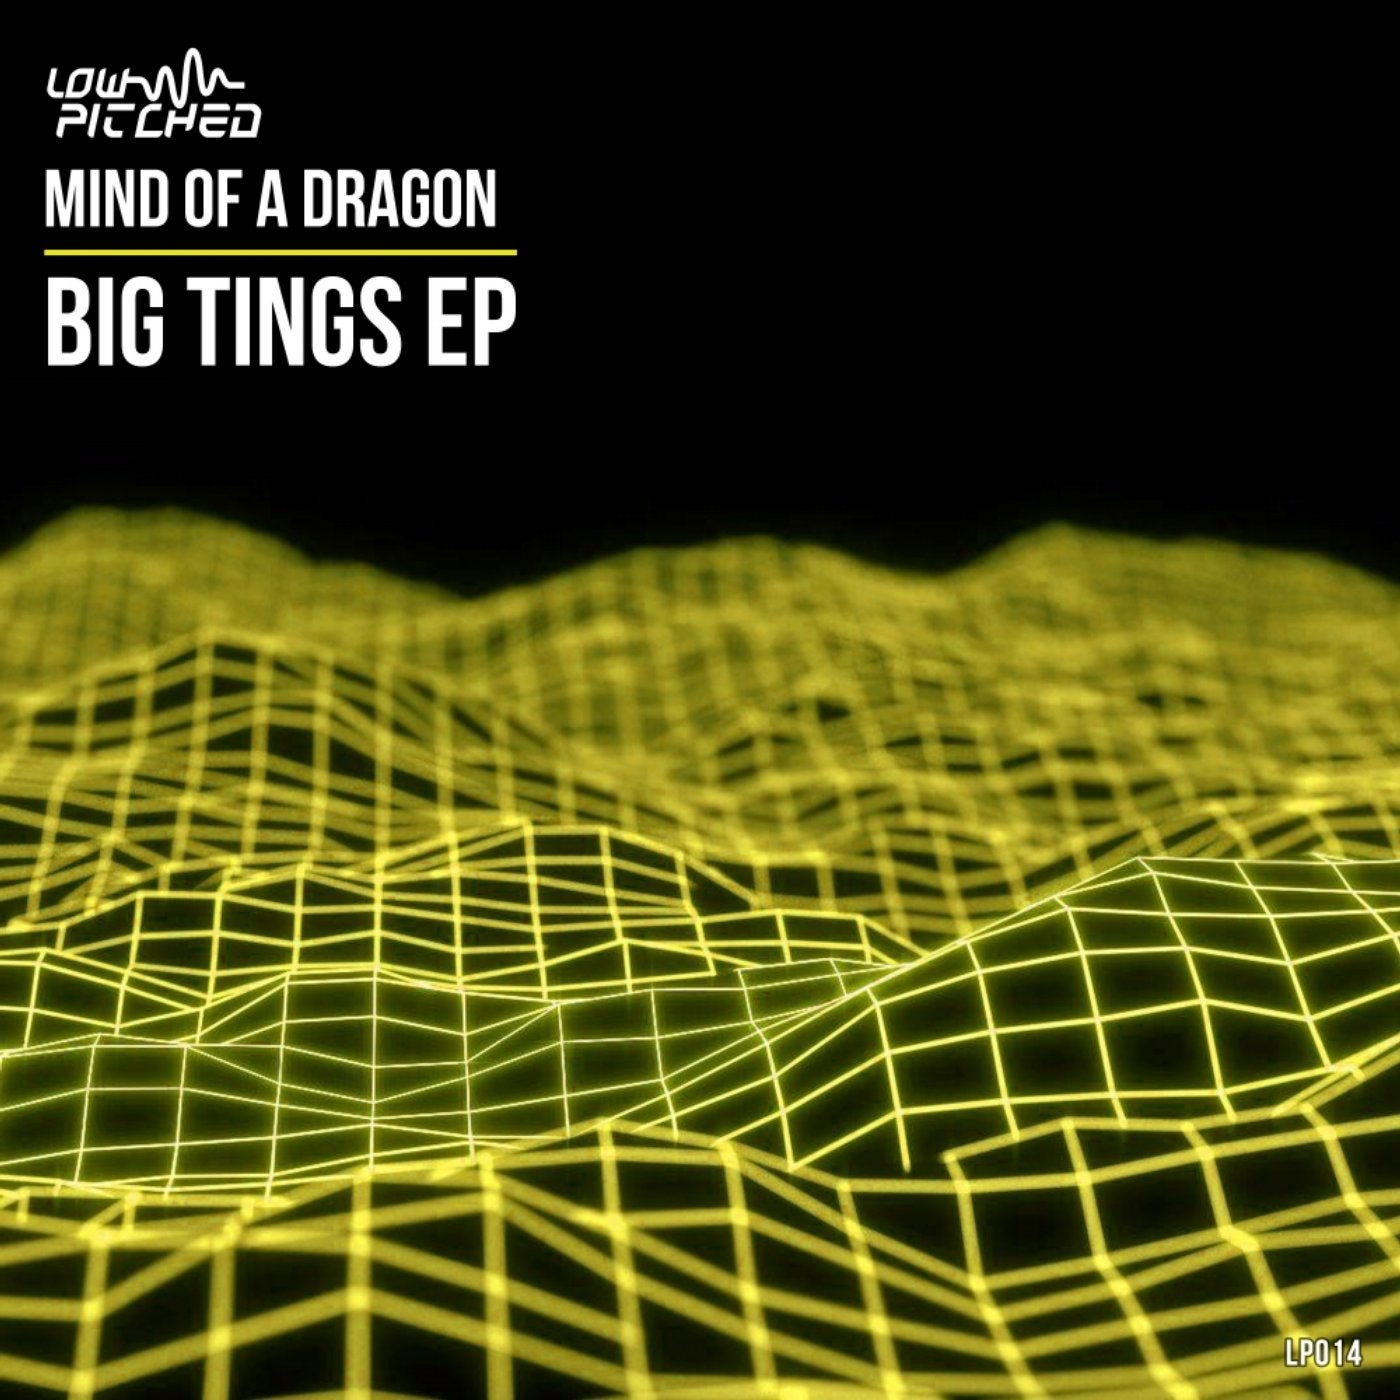 Big Tings EP